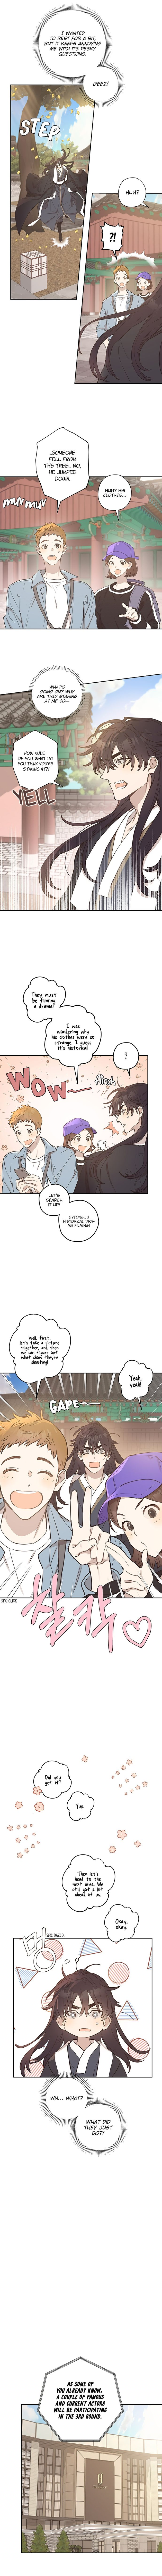 Onsaemiro - Chapter 6 Page 7